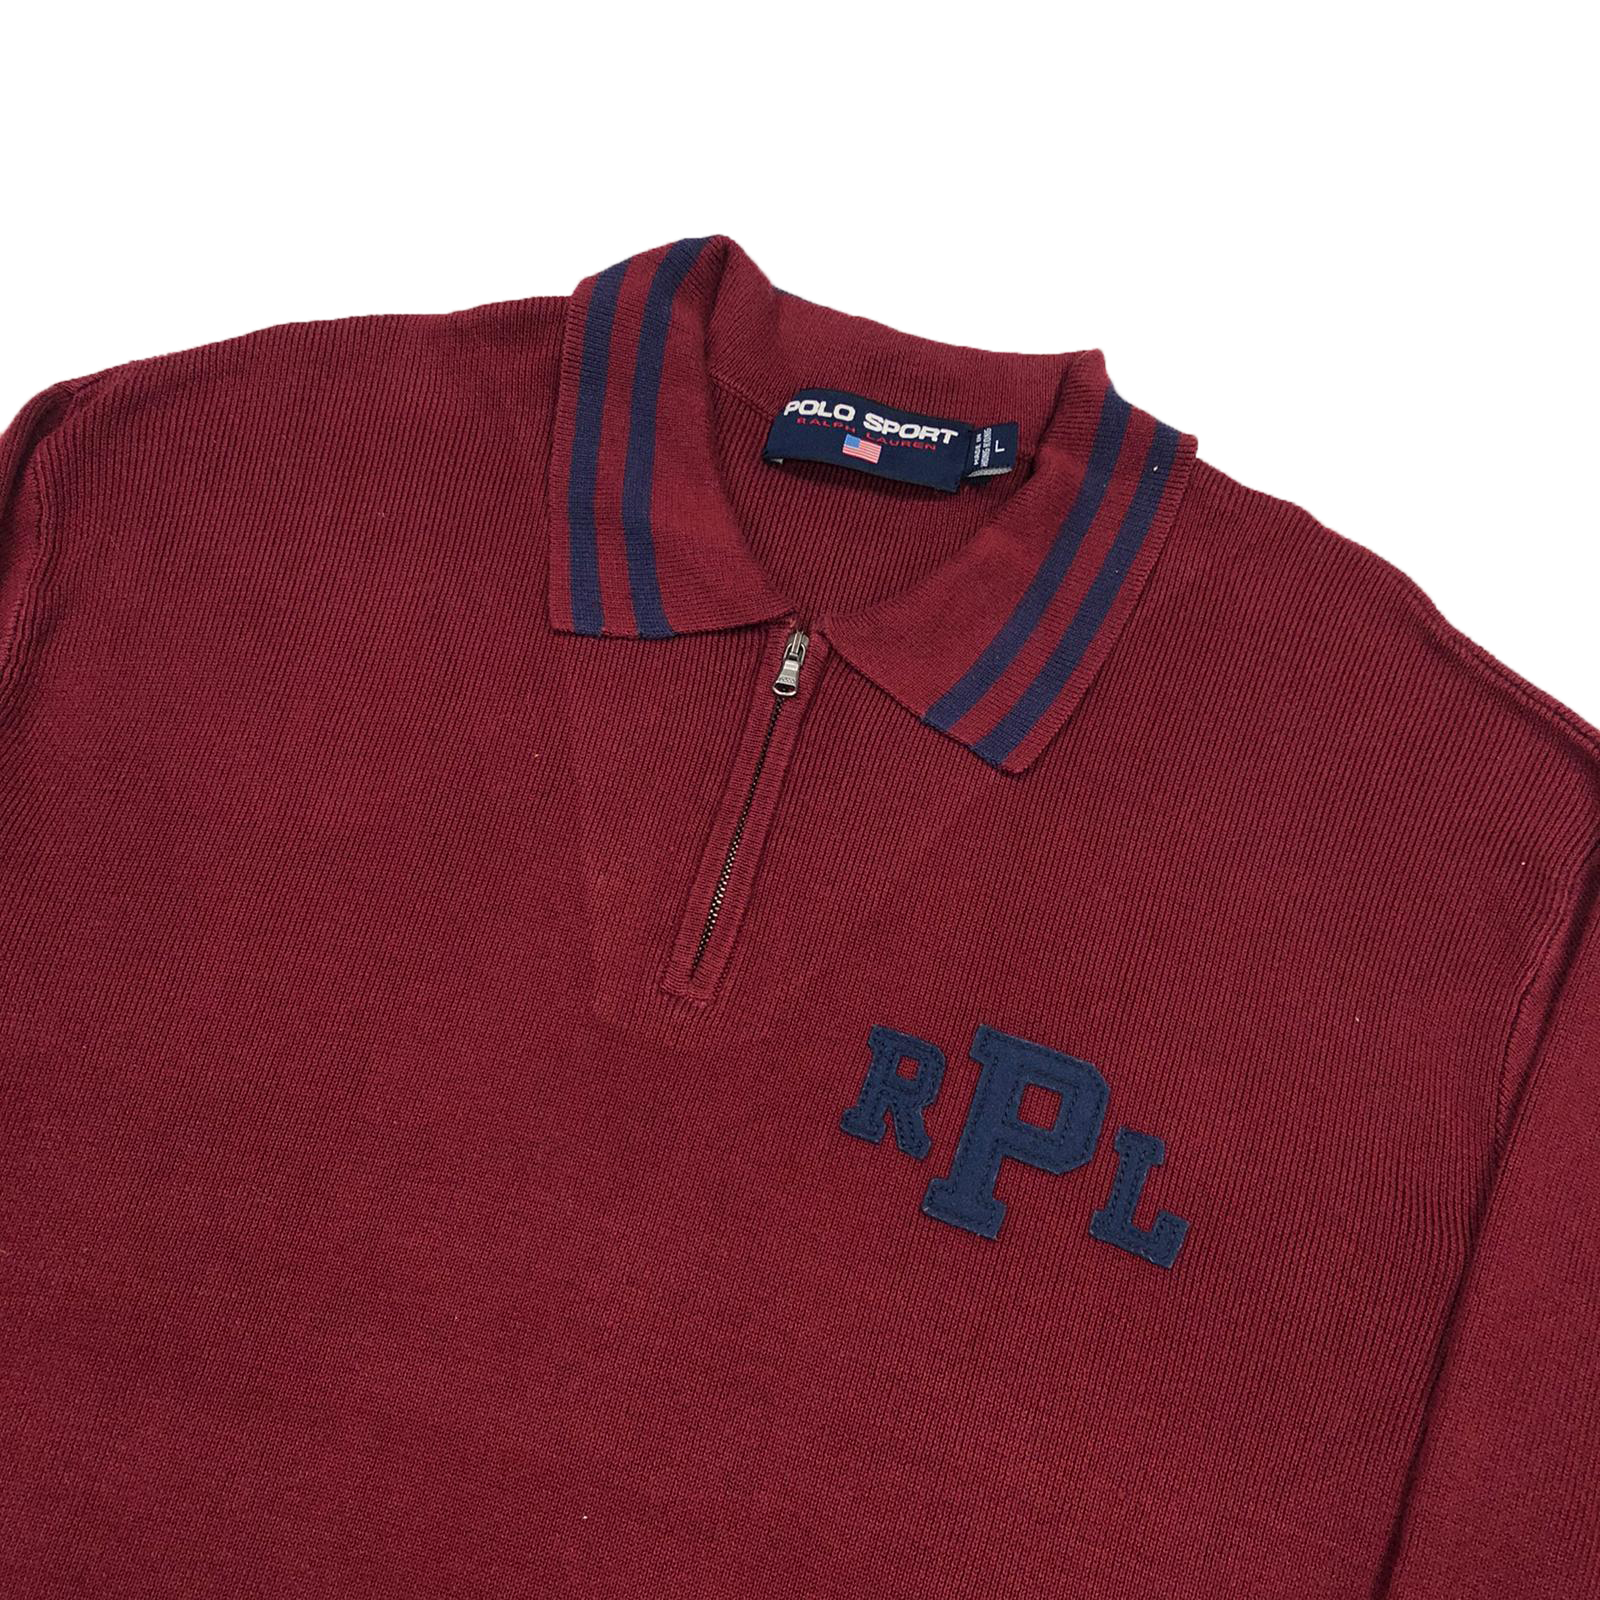 Polo Sport 1/4 zip knit sweatshirt